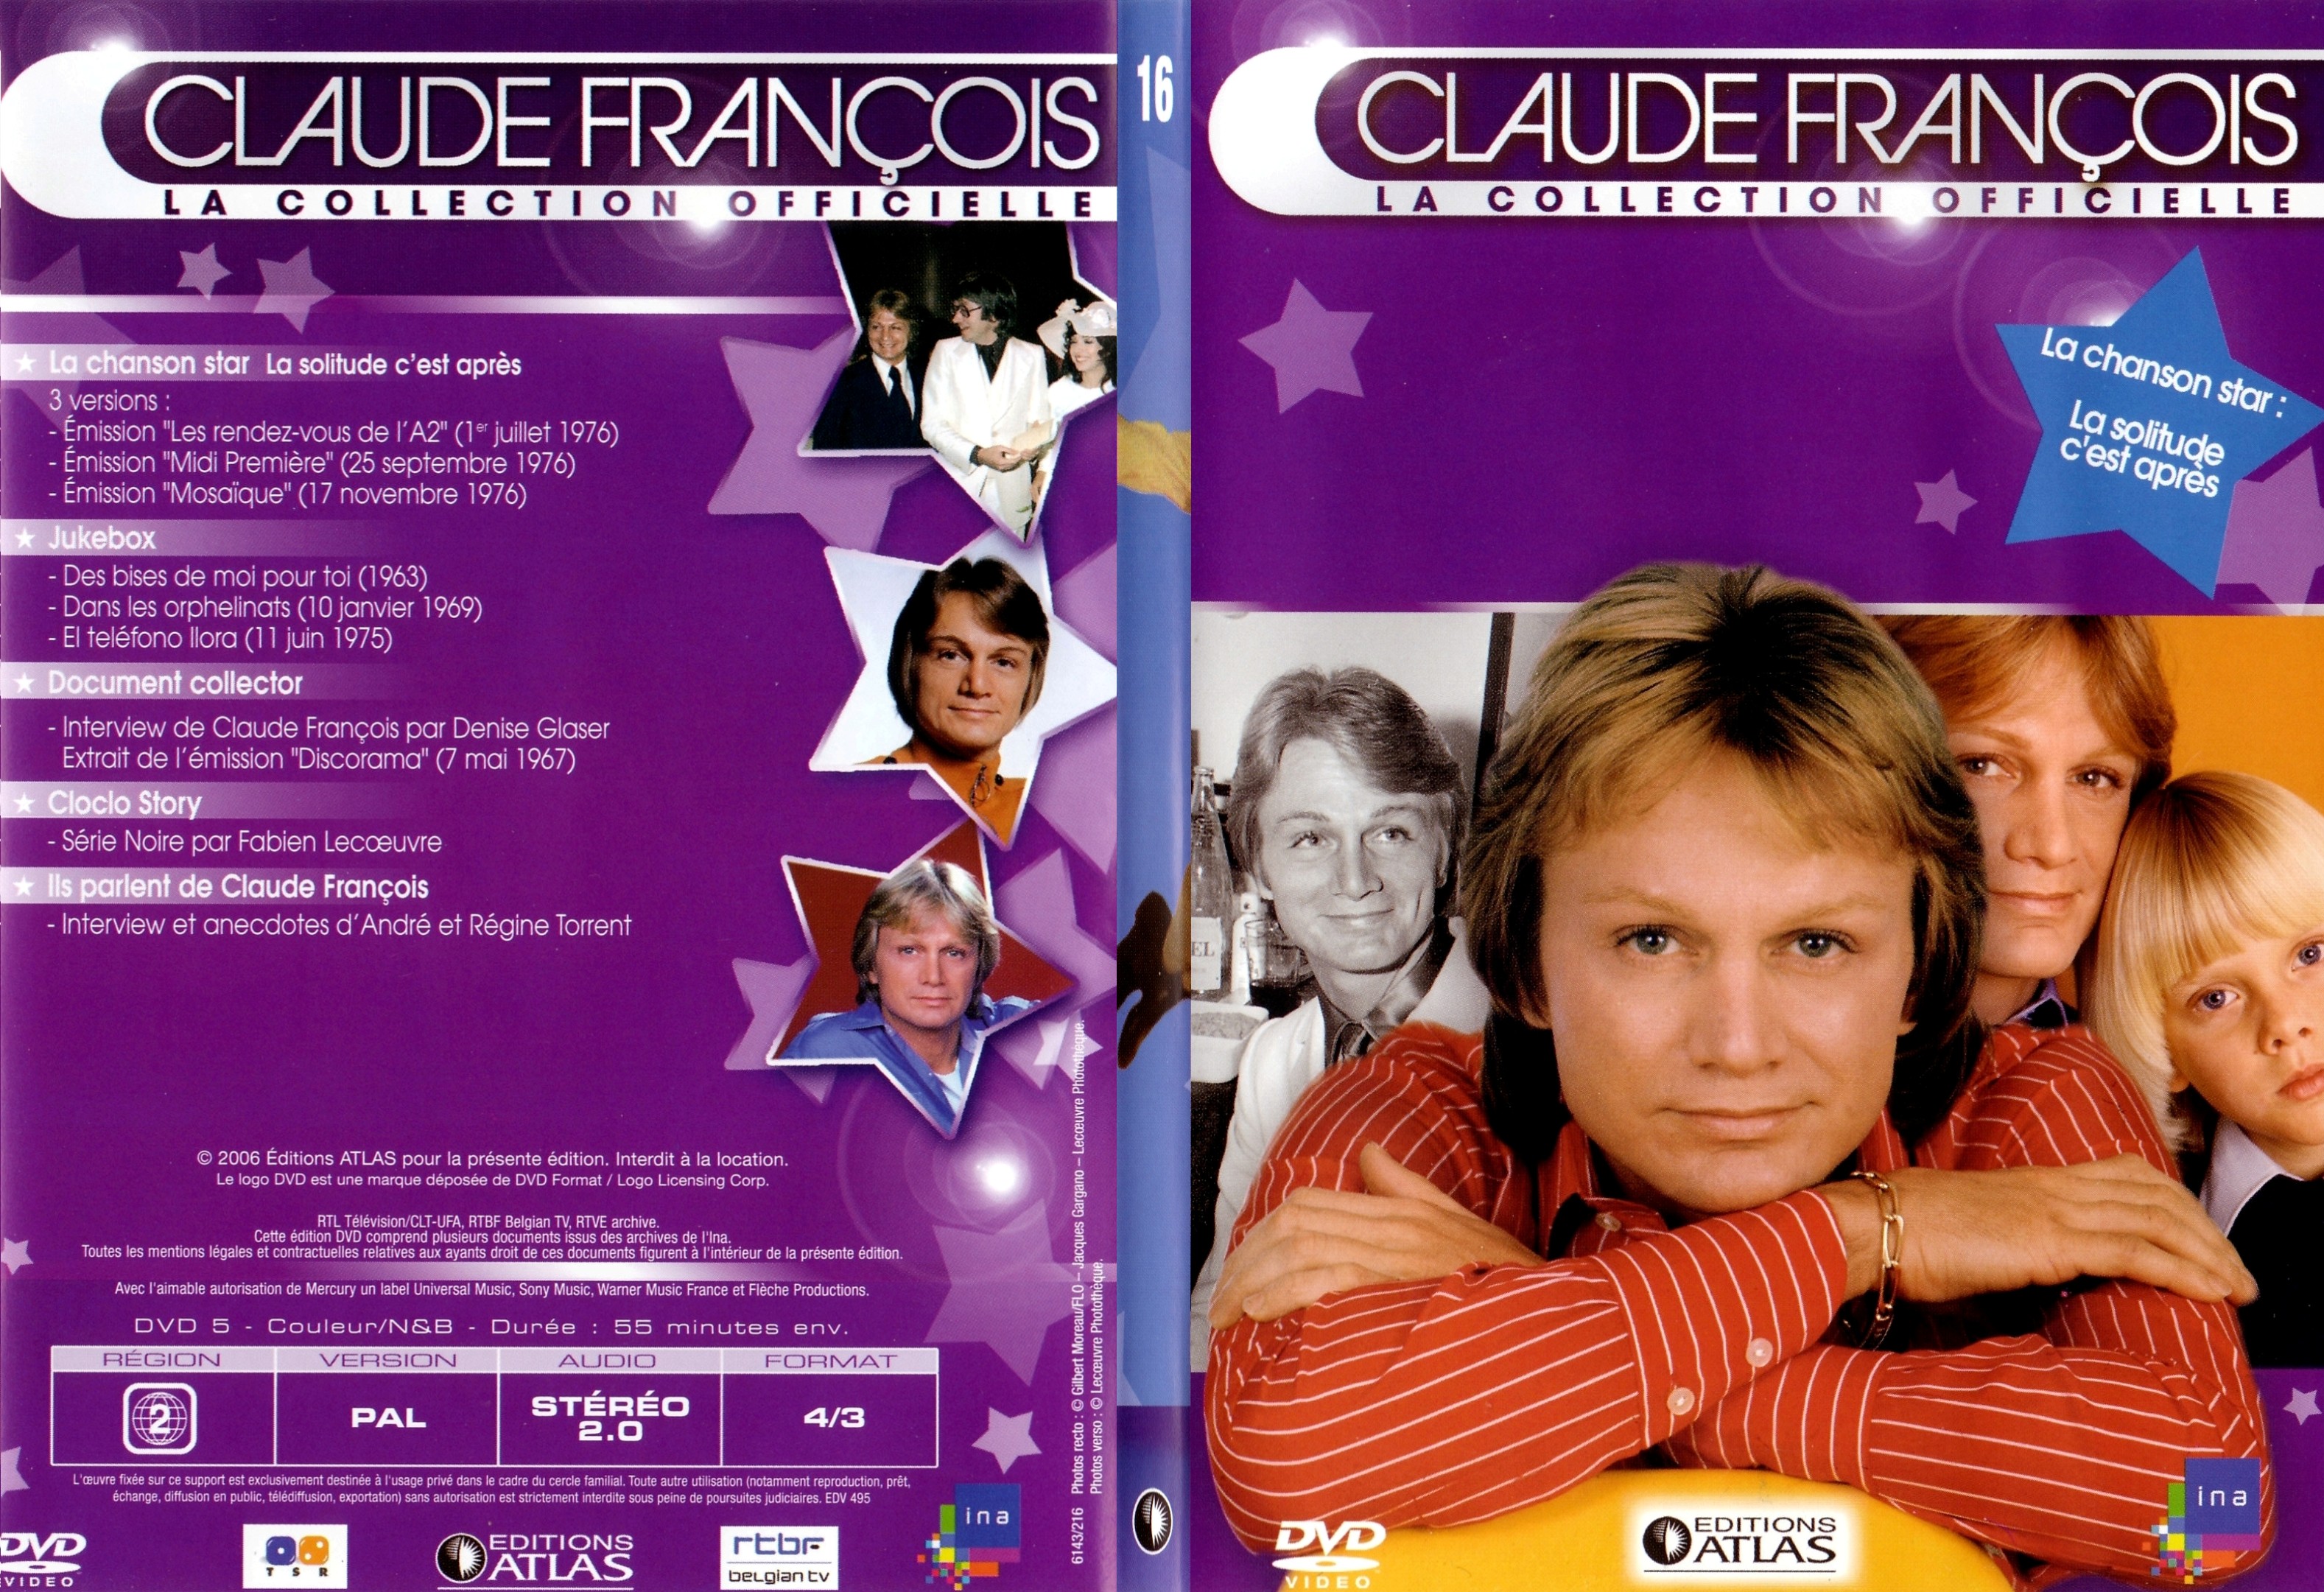 Jaquette DVD Claude francois le collection officielle vol 16 - SLIM